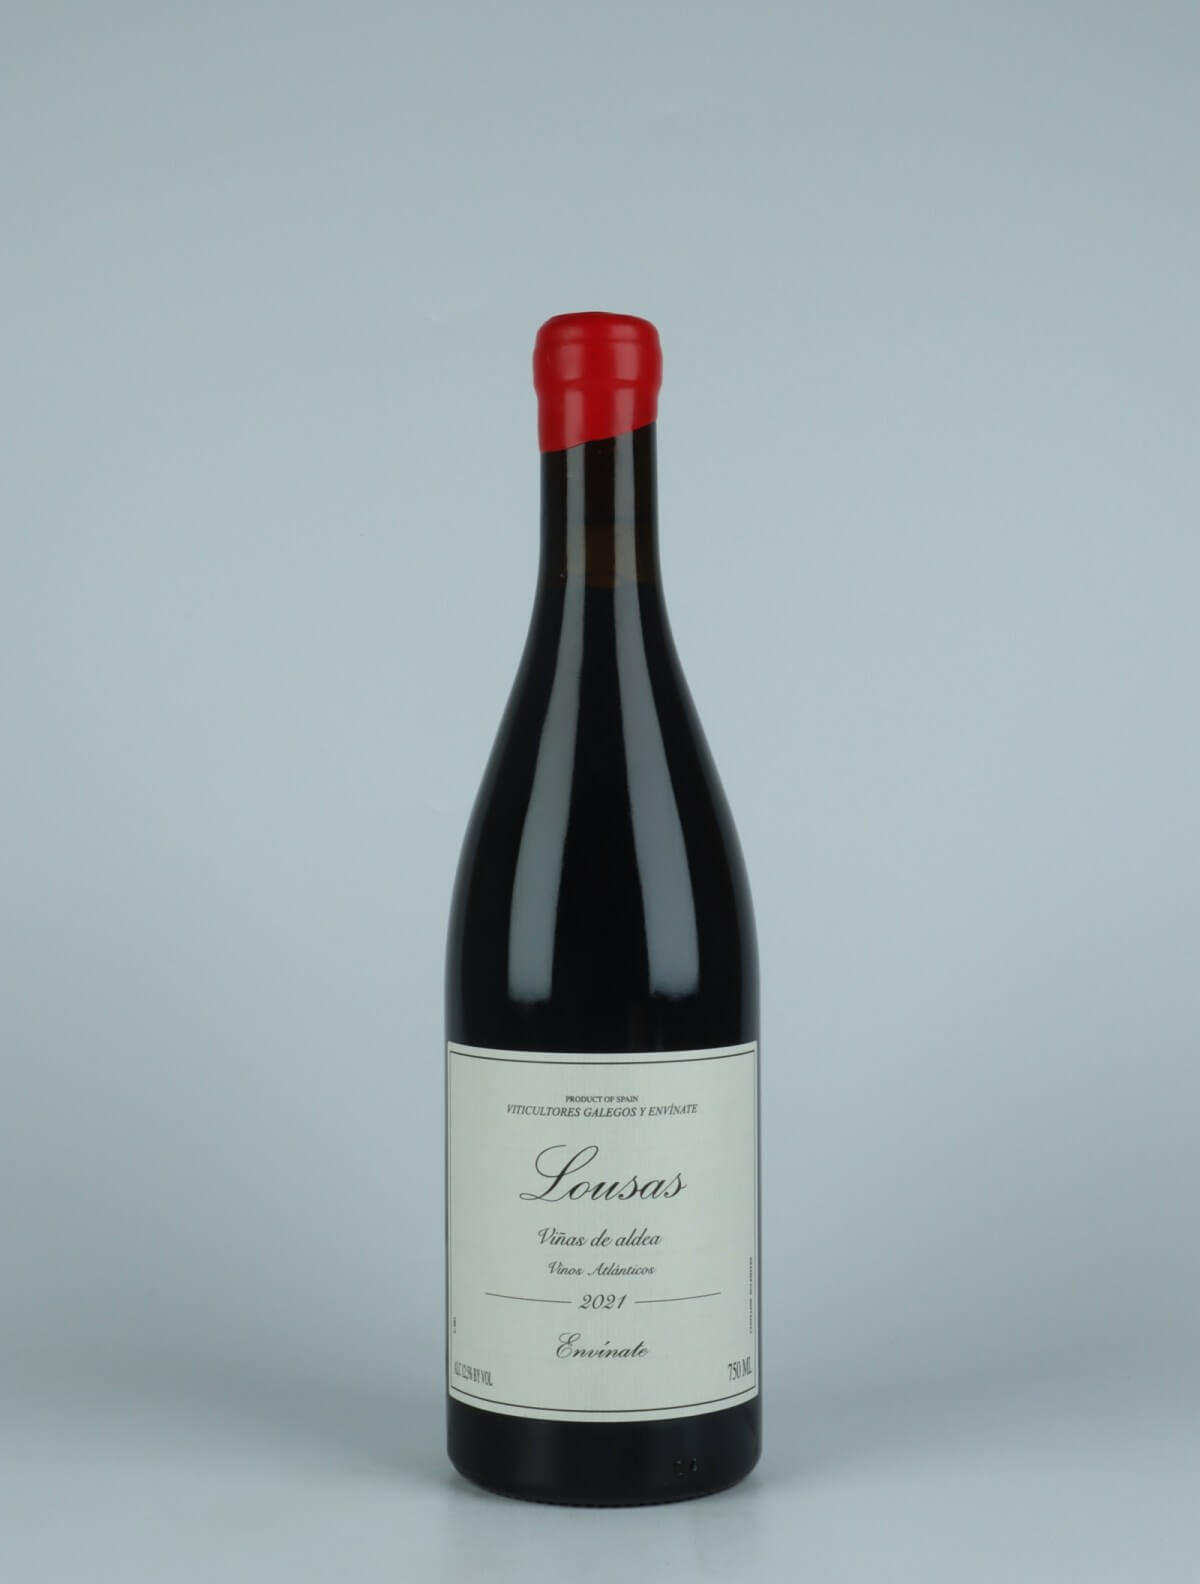 A bottle 2021 Lousas Viñas de Aldea - Ribeira Sacra Red wine from Envínate, Ribeira Sacra in Spain